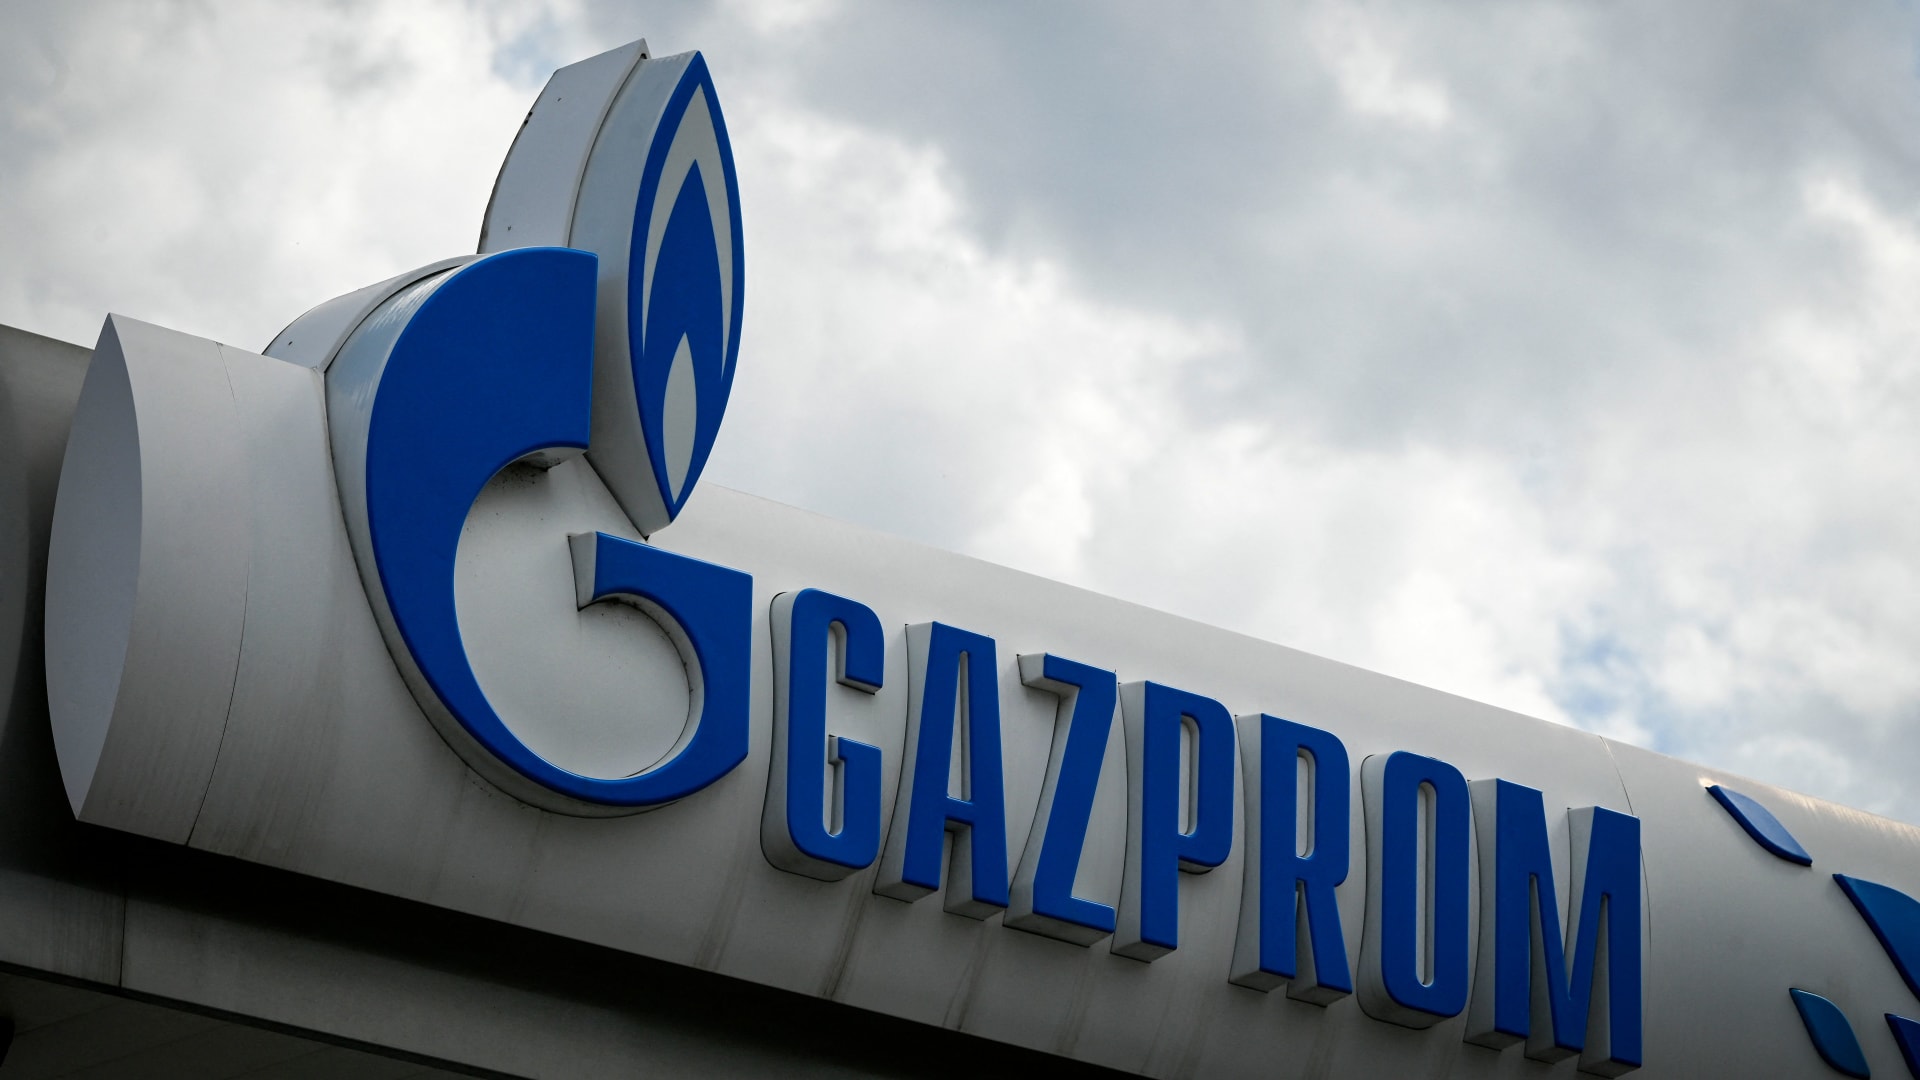 إيران توقع اتفاقا مع "غازبروم" الروسية بقيمة 40 مليار دولار